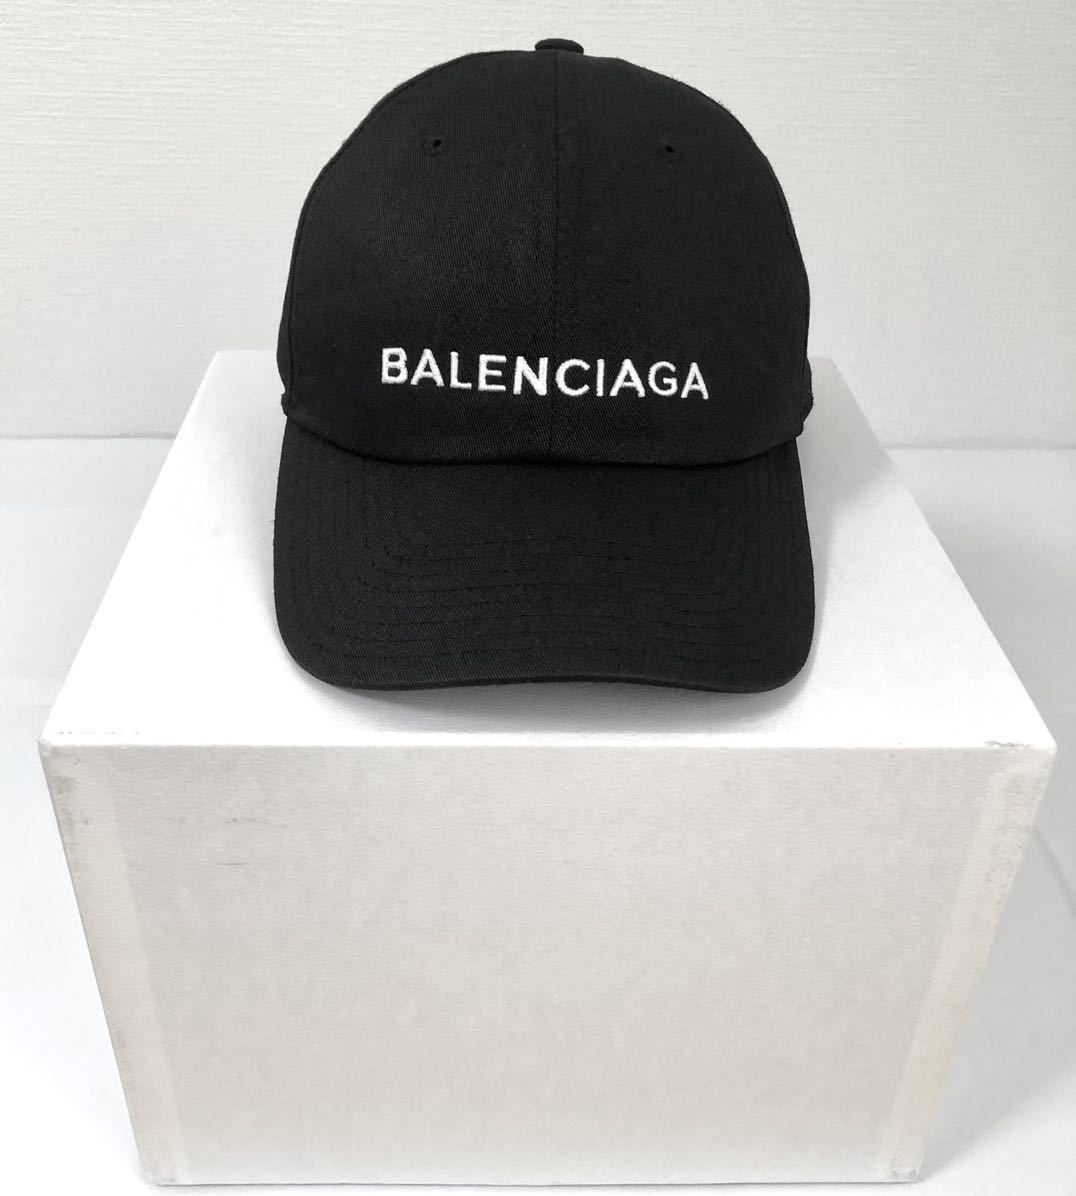 オフライン販売 【美品】バレンシアガ ロゴ キャップ 帽子 希少 黒 キャップ